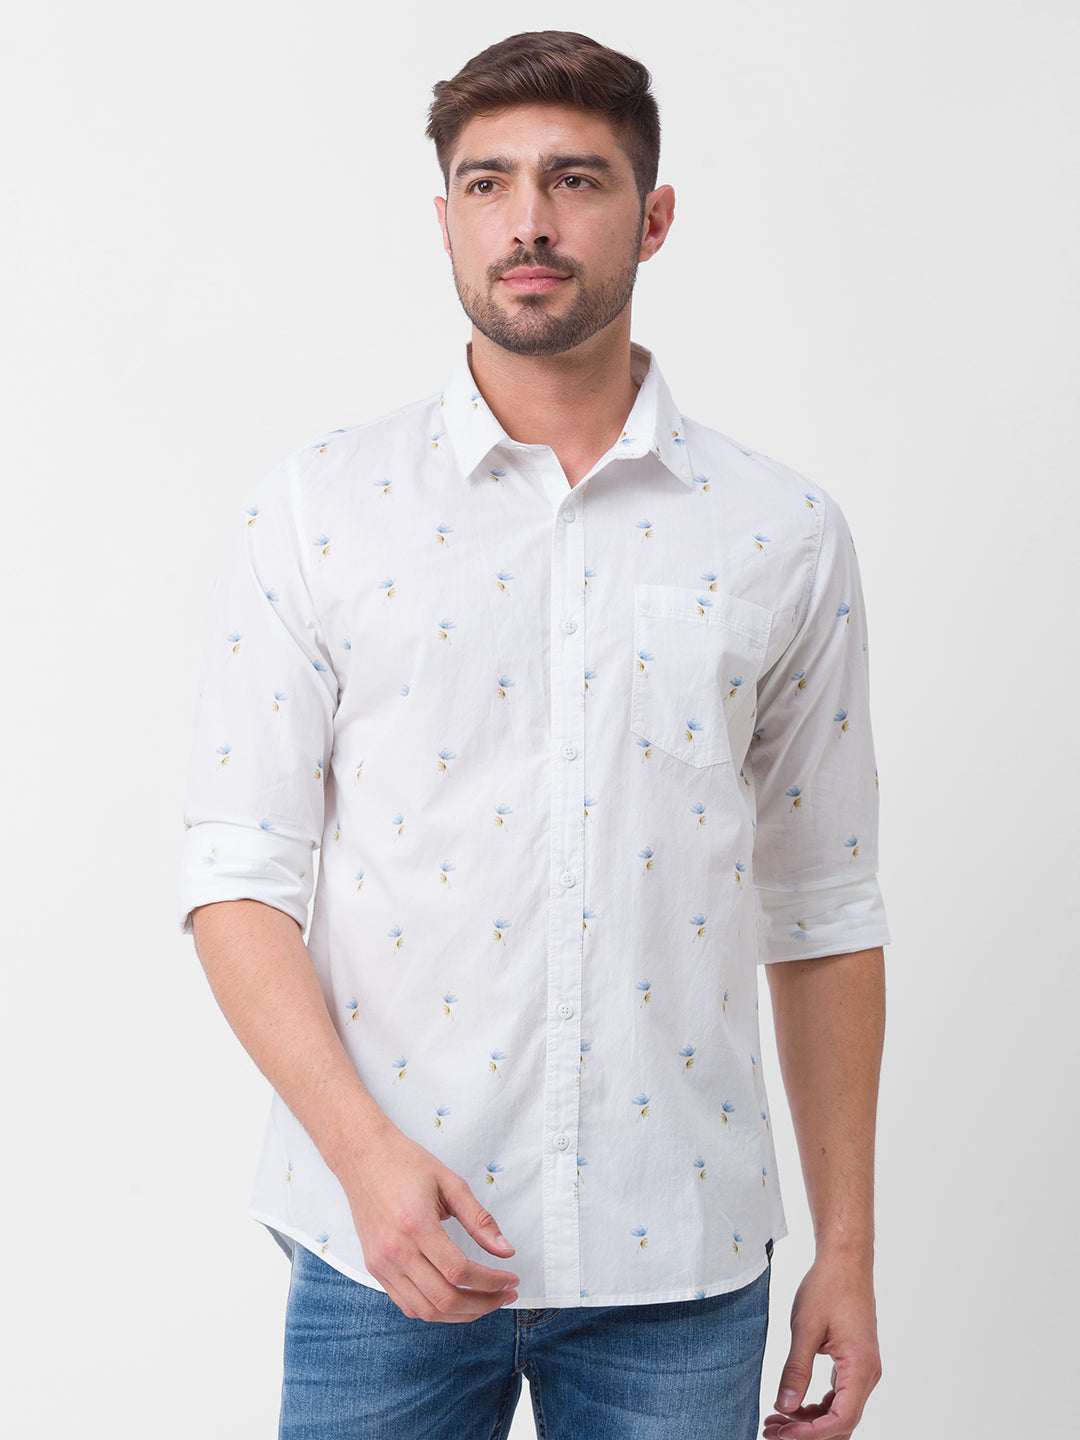 Spykar White Cotton Full Sleeve Printed Shirt For Men